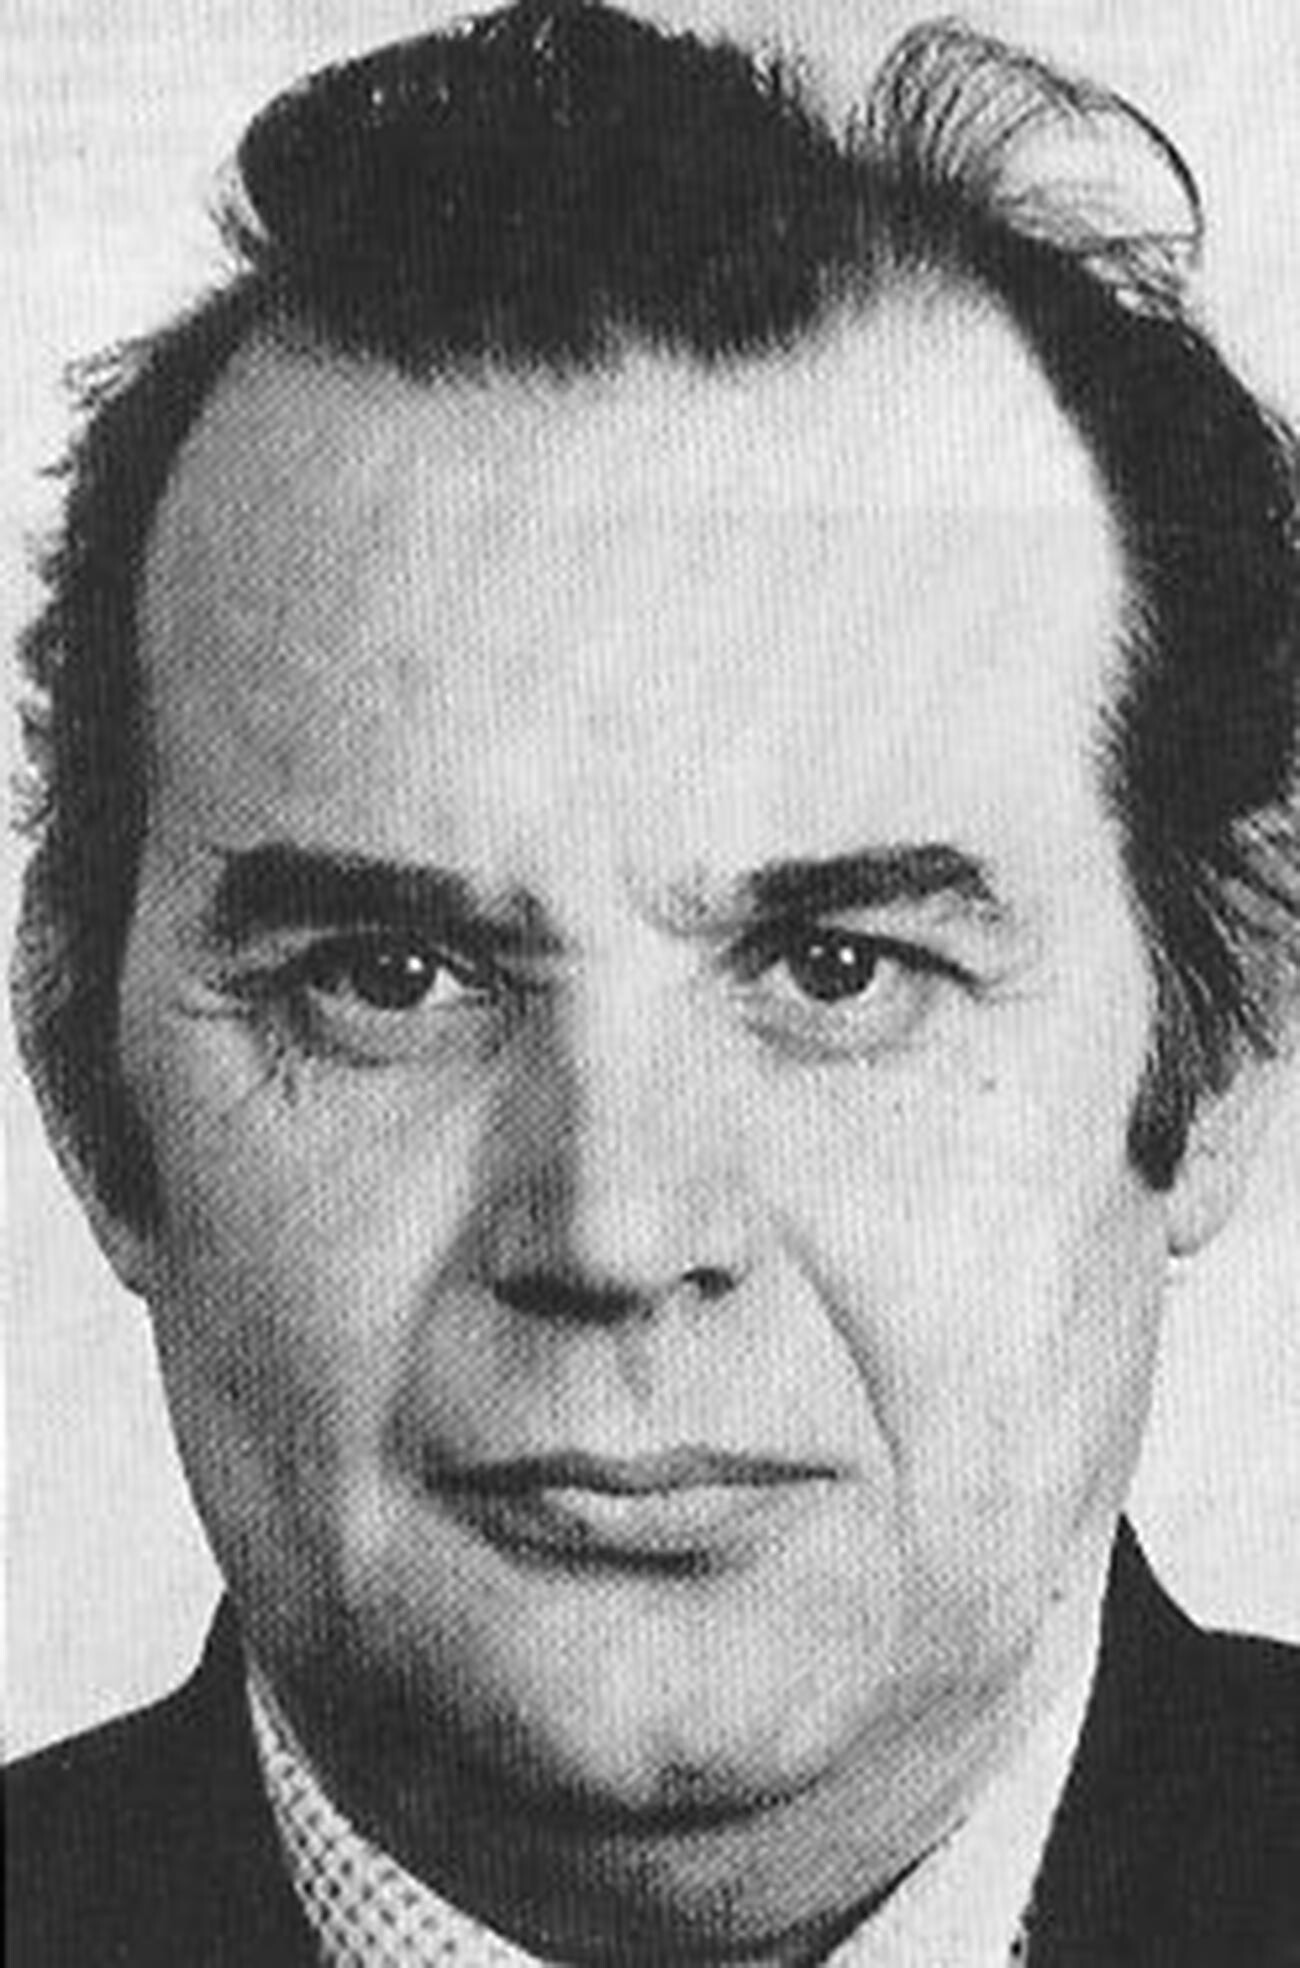 Vladimir Vetrov, tenente colonnello del Kgb, condannato per duplice omicidio nel 1982 e poi scoperto essere un doppiogiochista